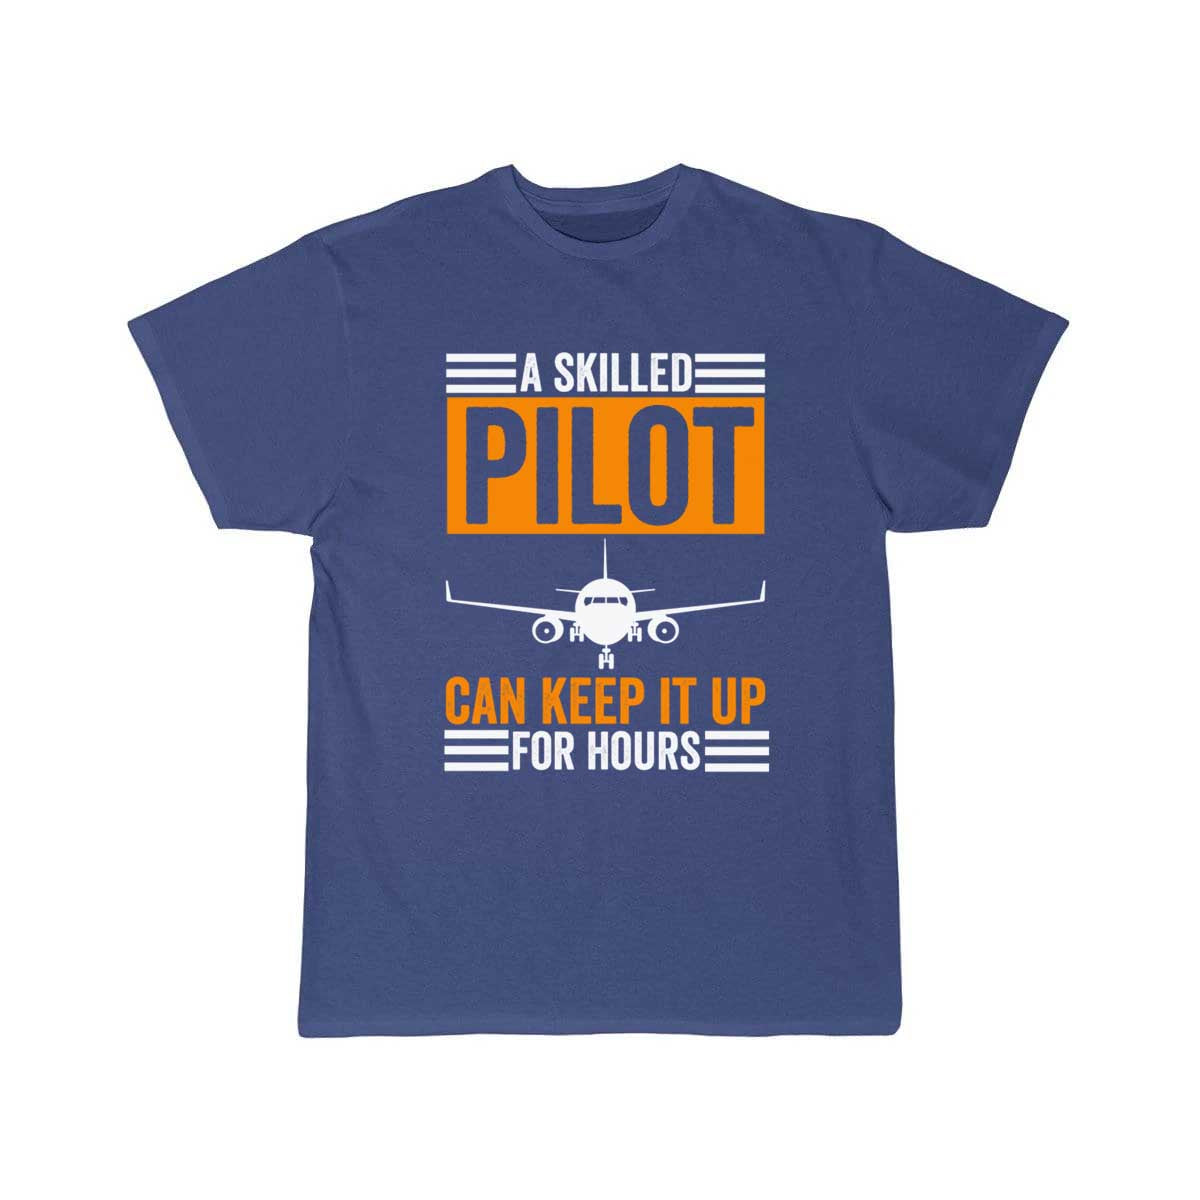 Glider Plane Pilot Airplane Flight Jet Fighter Gif T Shirt THE AV8R